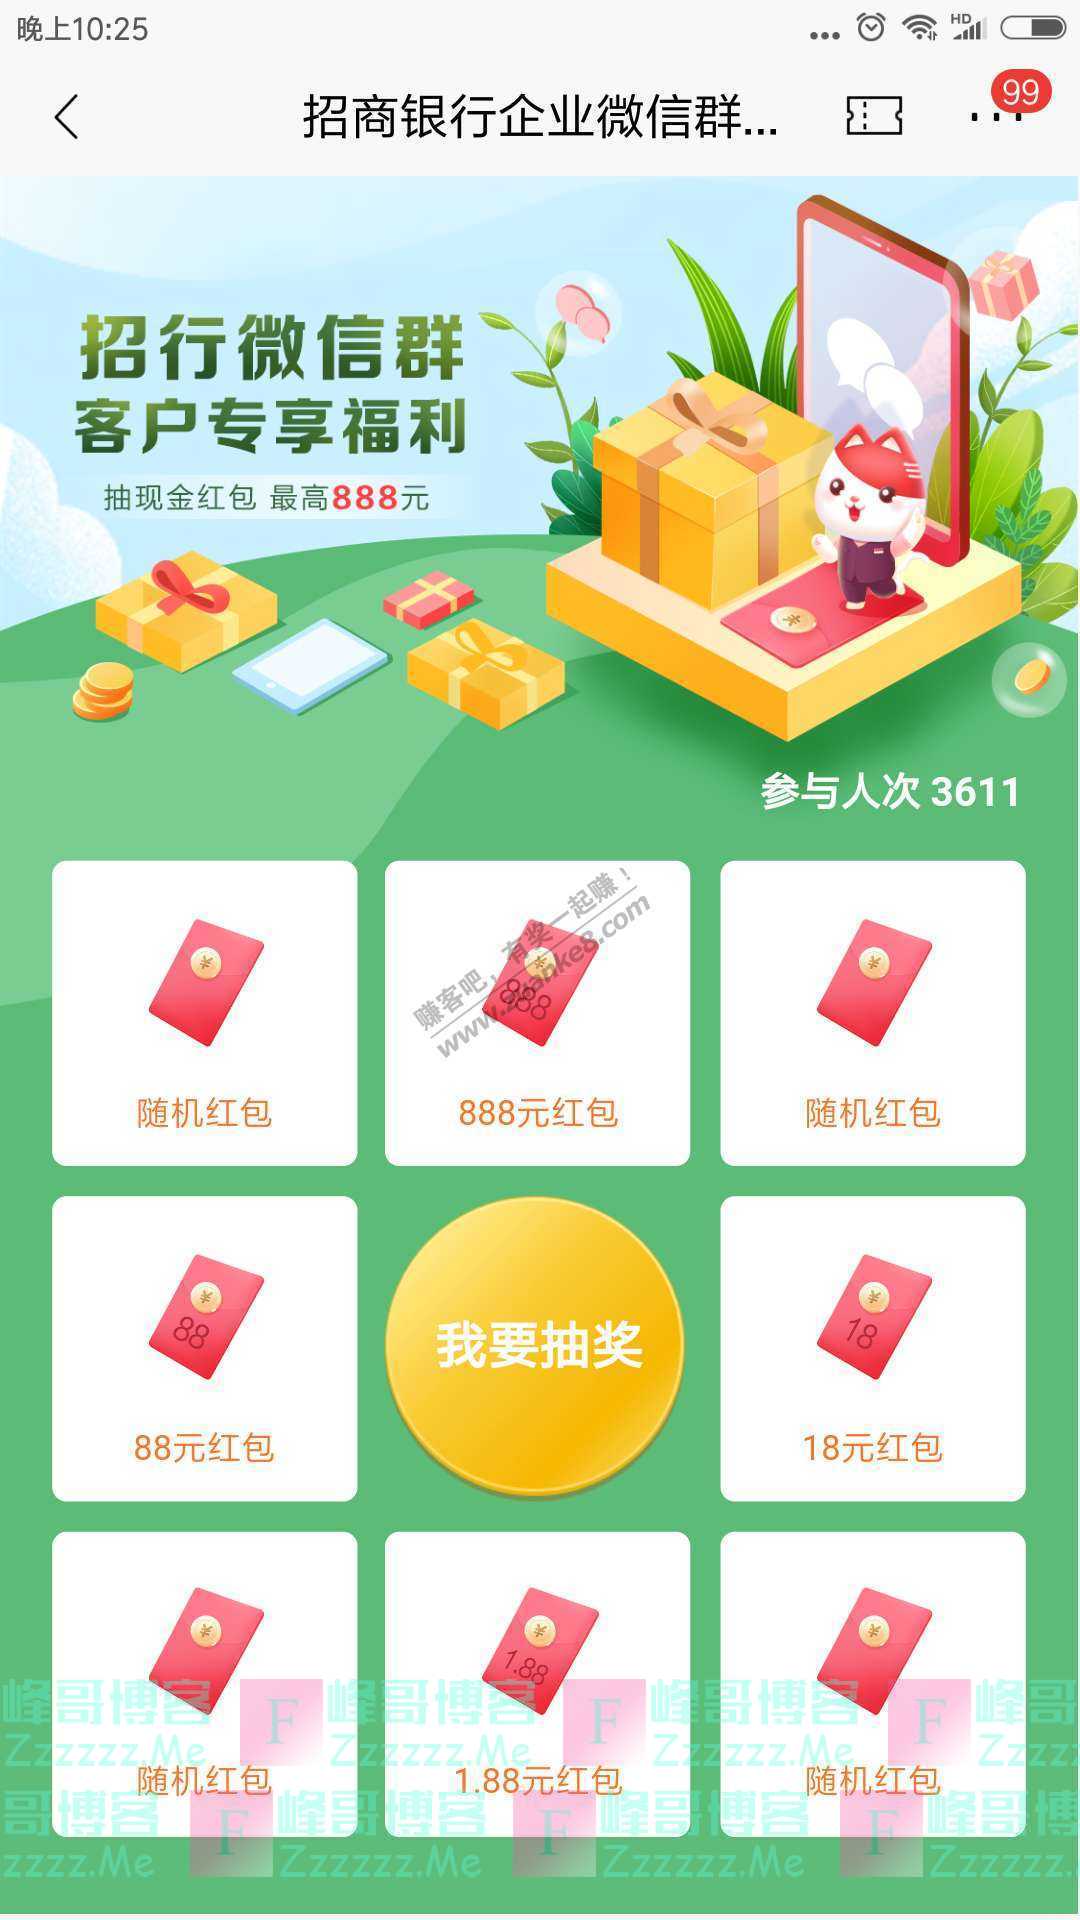 招商银行app招行微信群客户专享福利（截止7月31日）